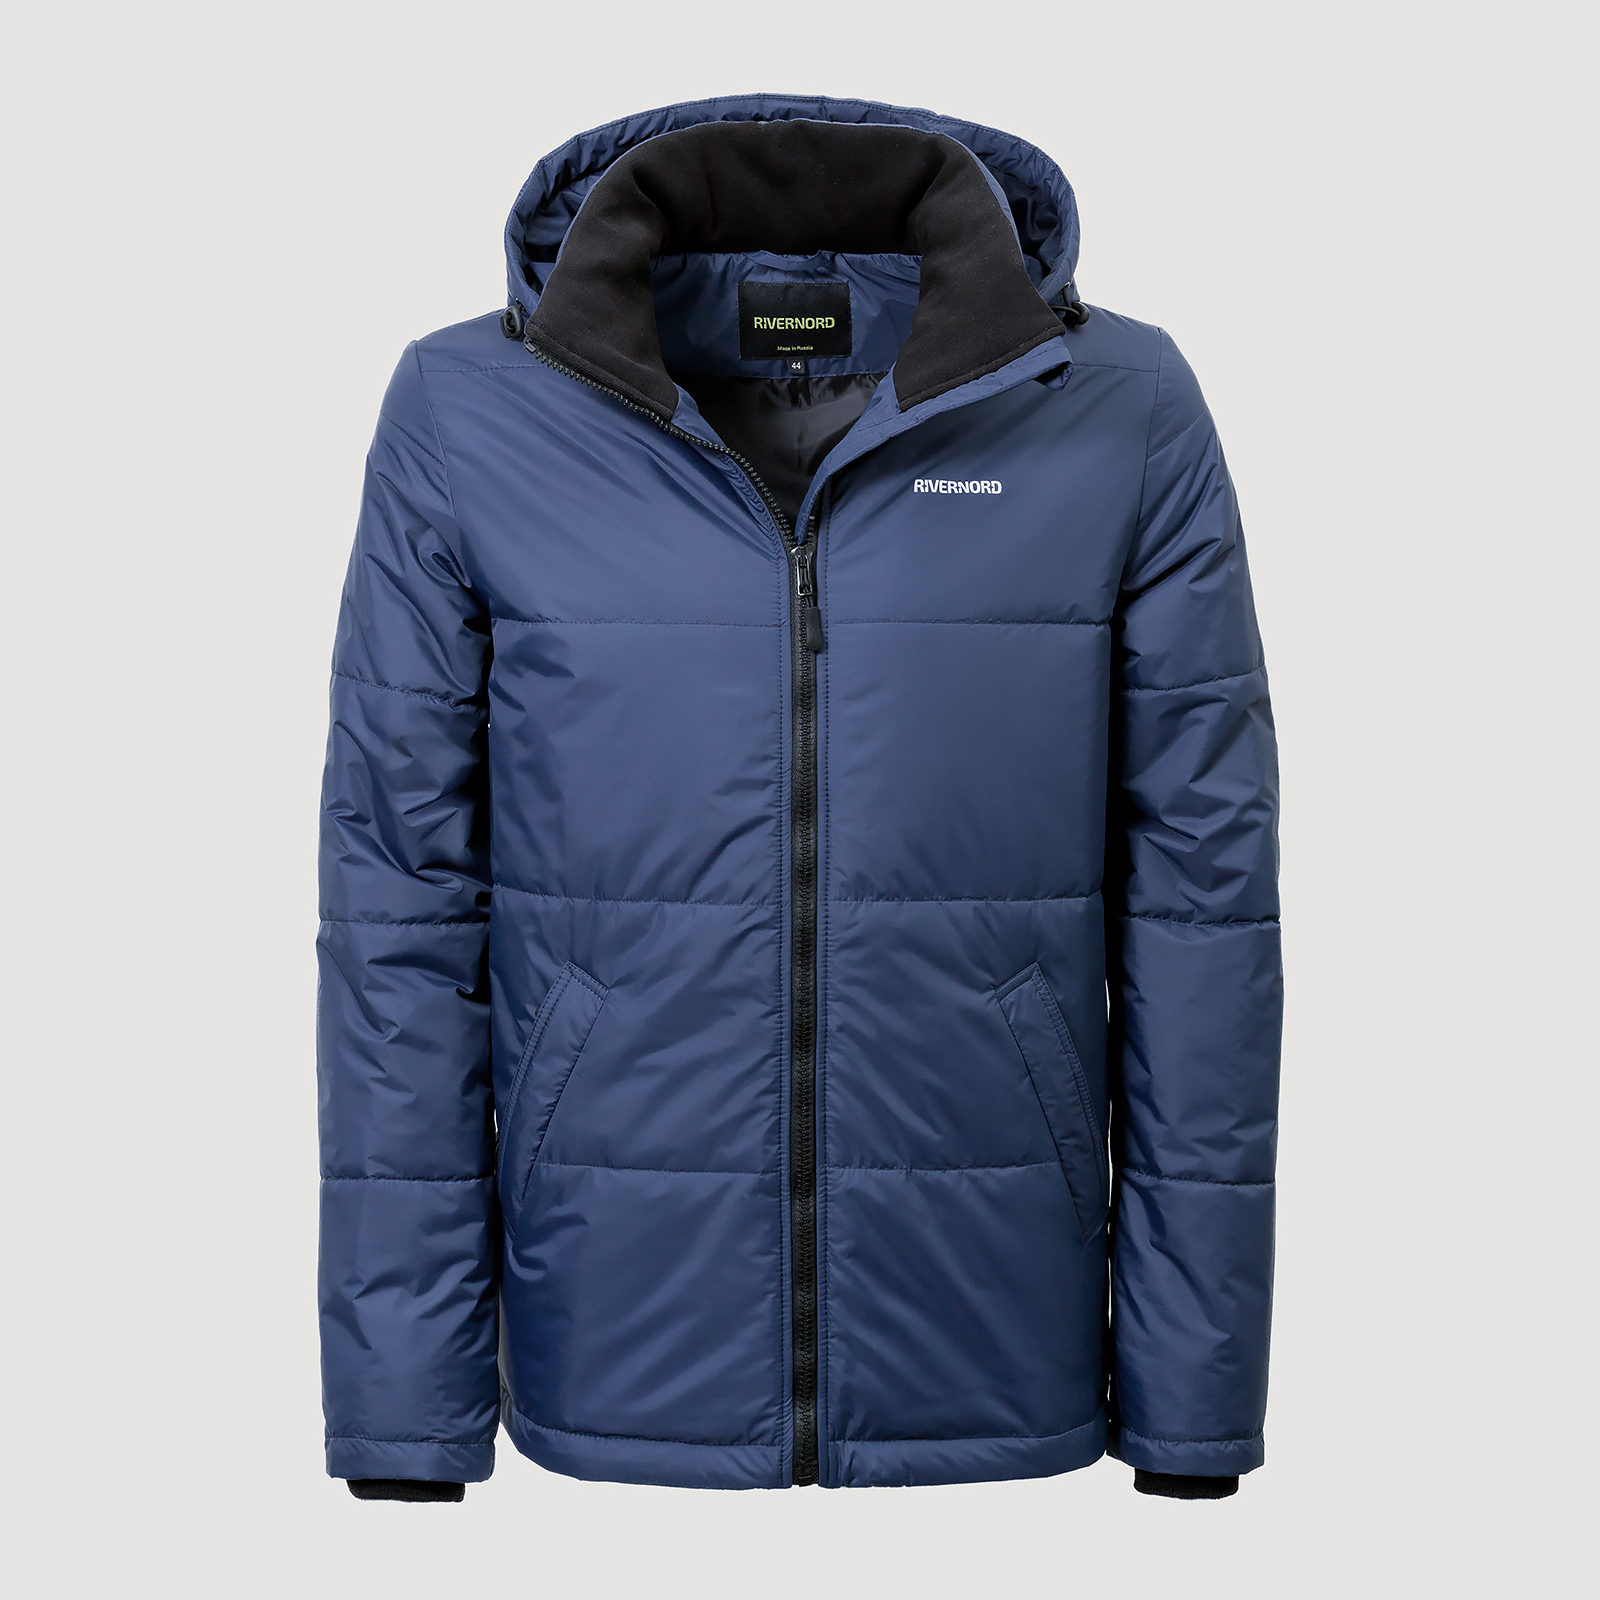 Мужская демисезонная куртка Classic Winter Original цвет темно-синий